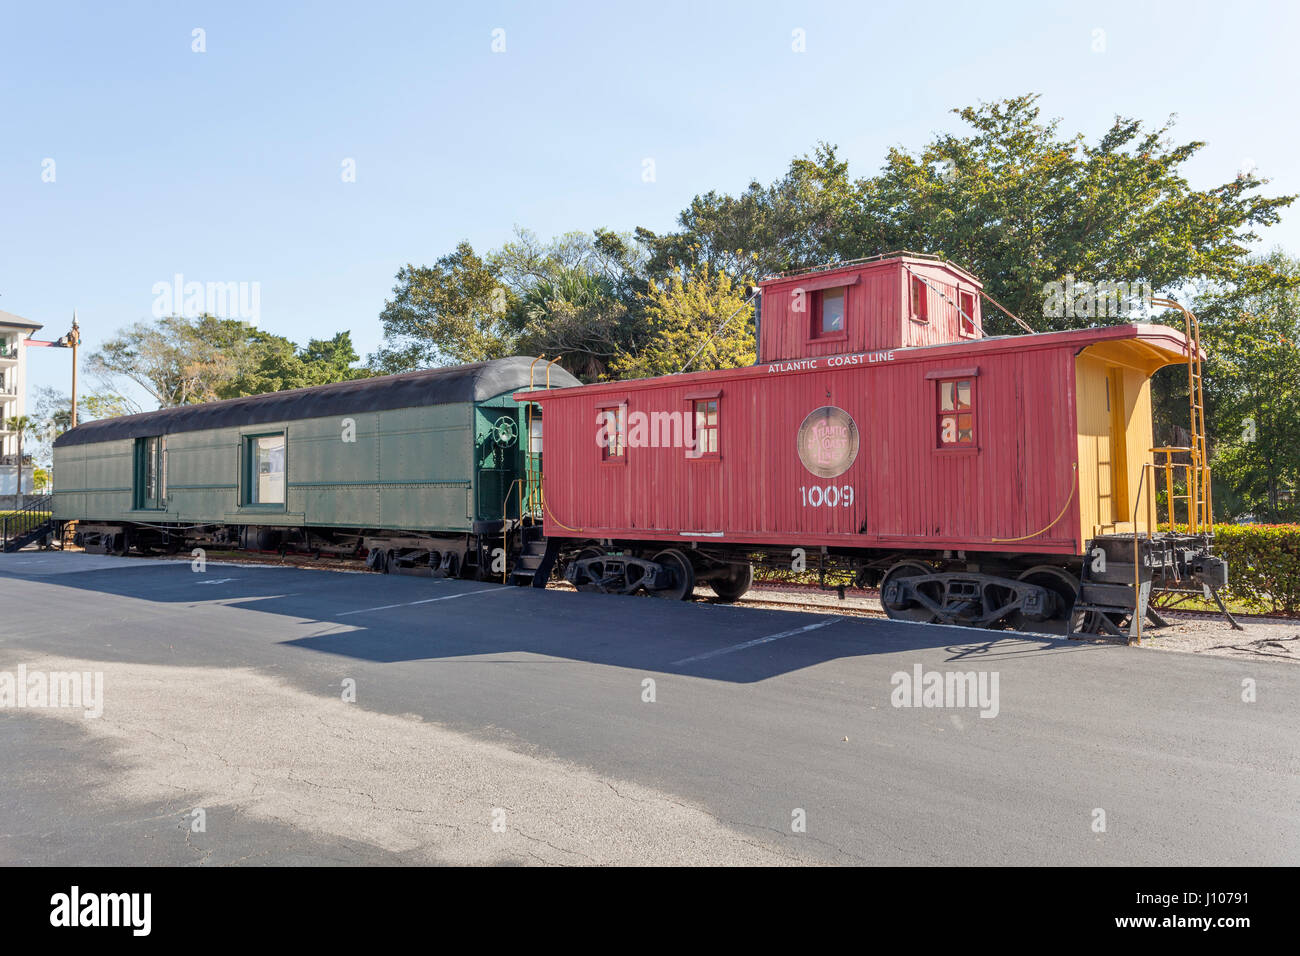 Naples, FL, USA - Le 21 mars 2017 : vieux wagons de la côte atlantique au dépôt de Naples et train museum. Florida, United States Banque D'Images